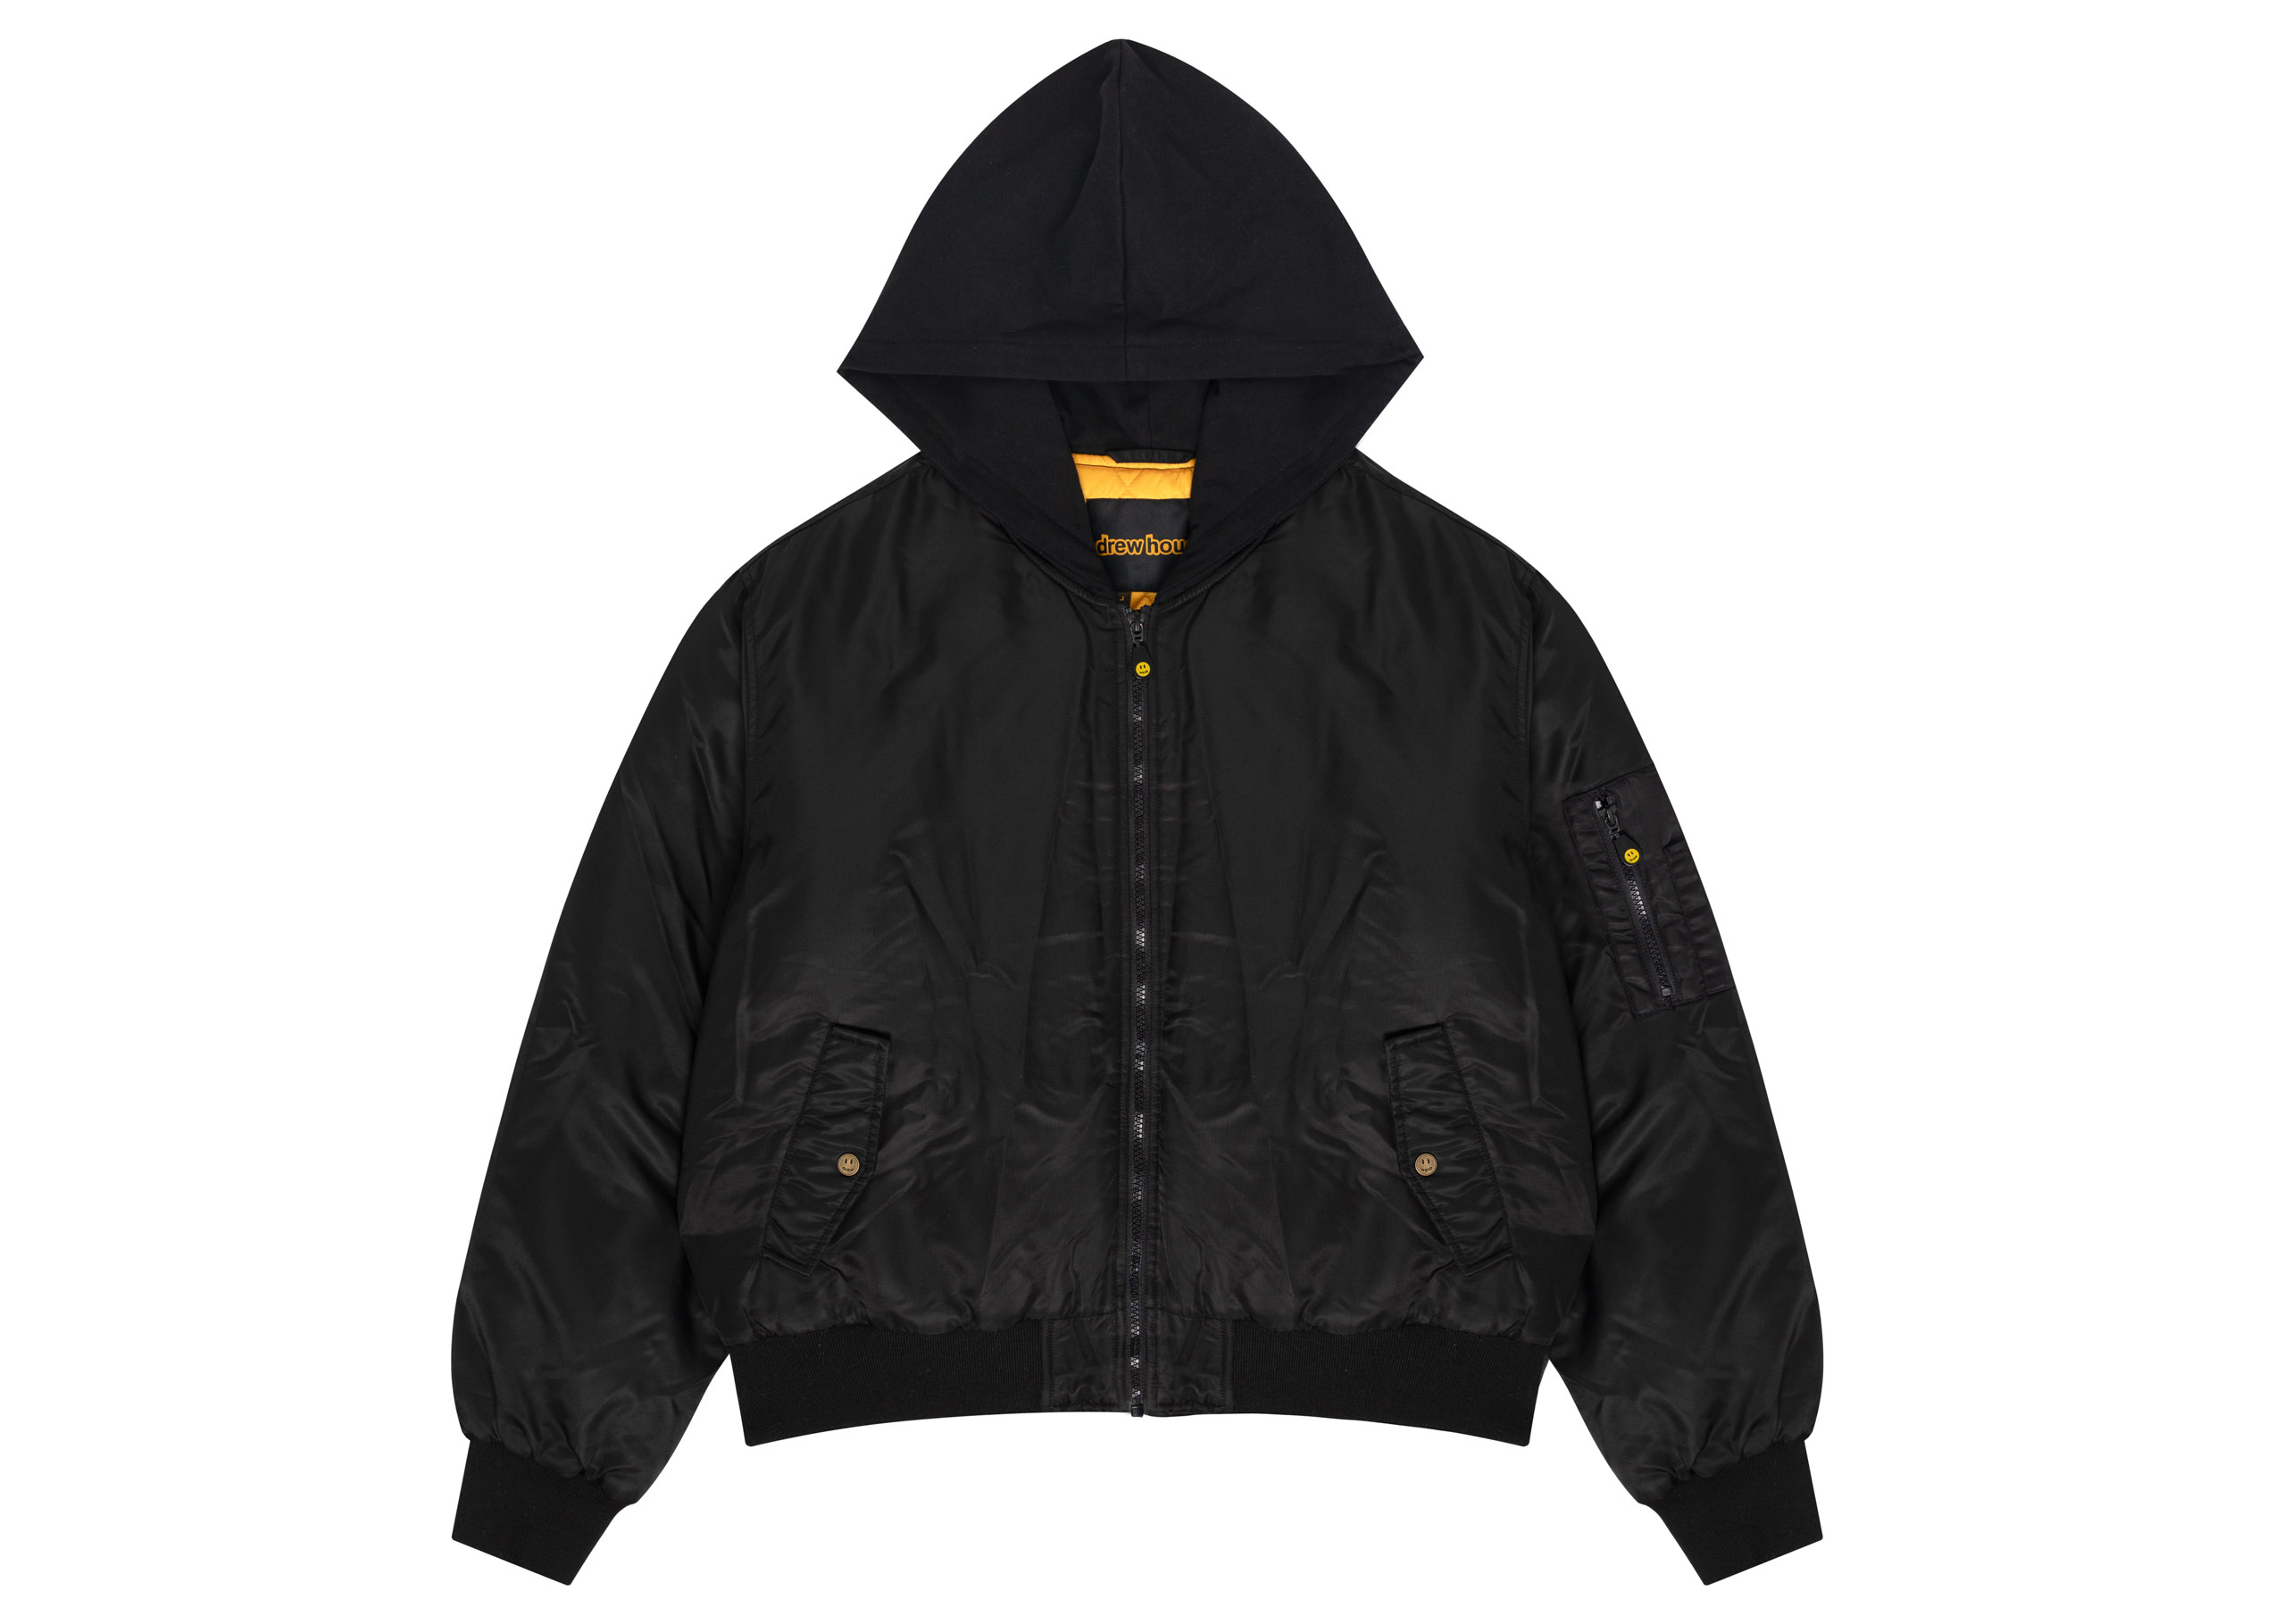 drew house mascot hooded bomber jacket black Men's - FW22 - US